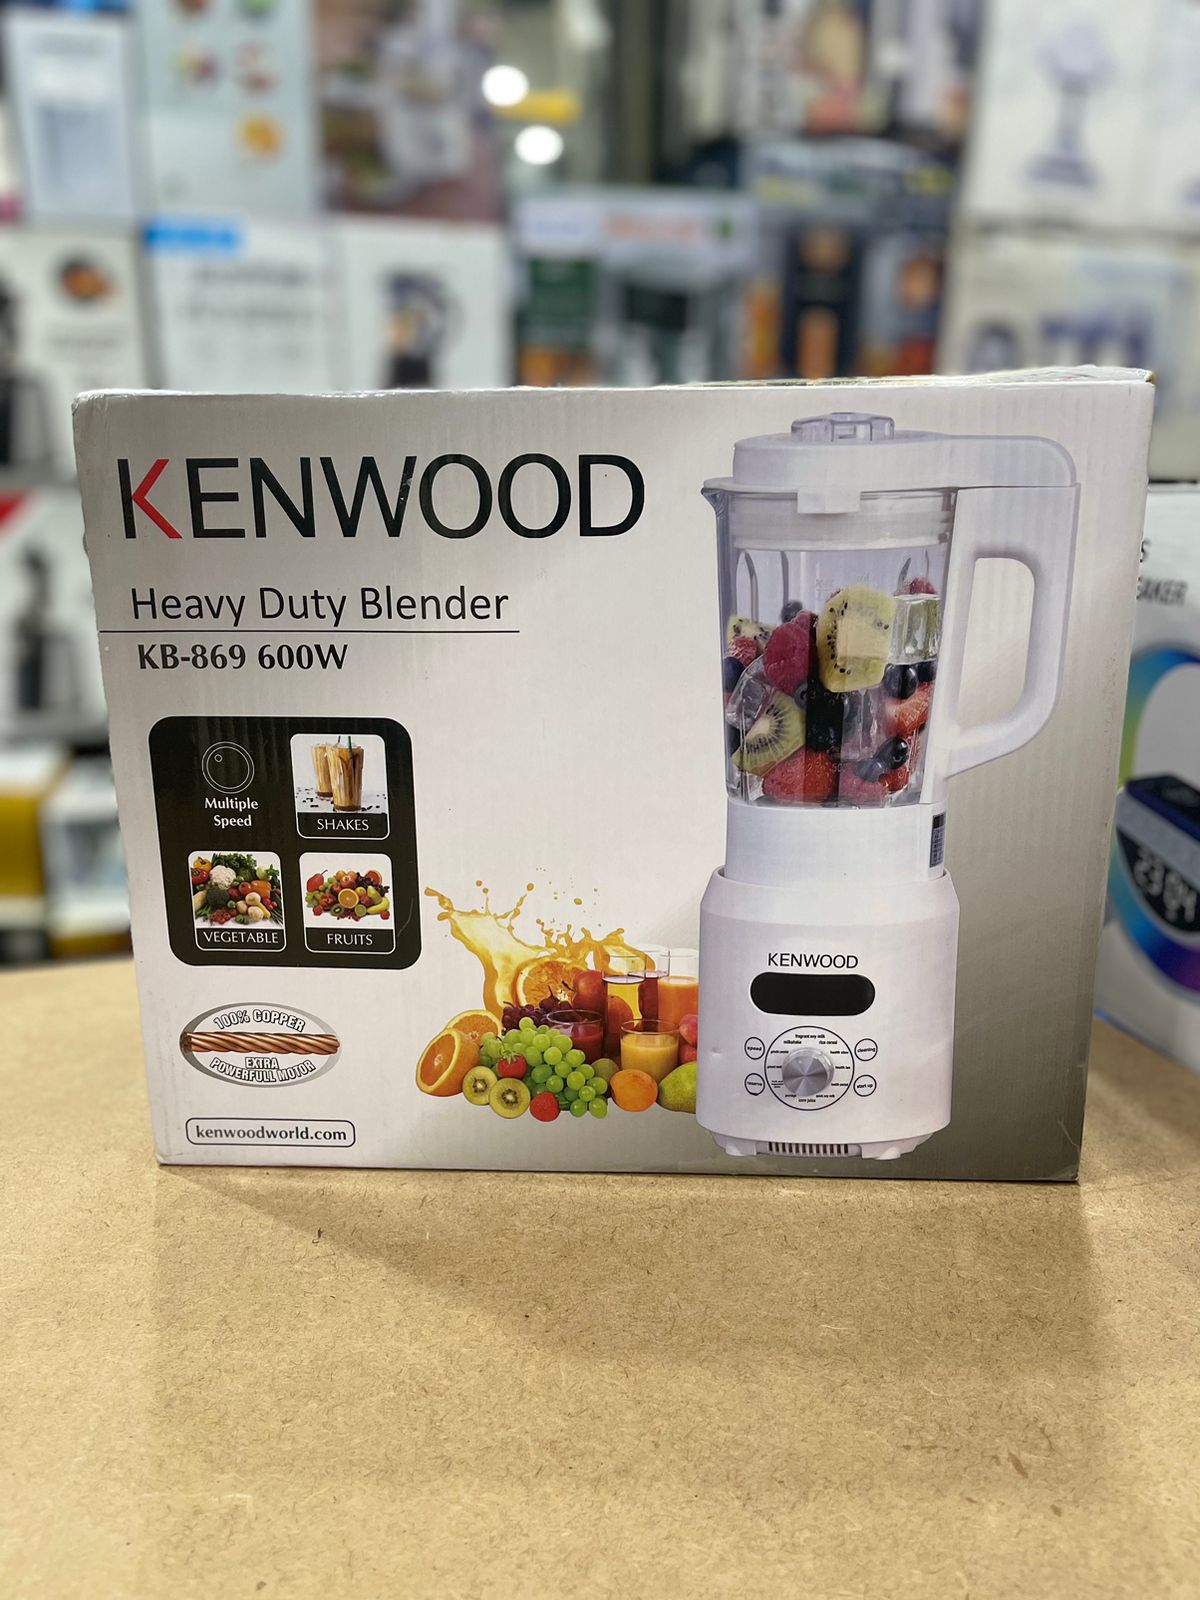 Kenwood multiple functions cooking blender